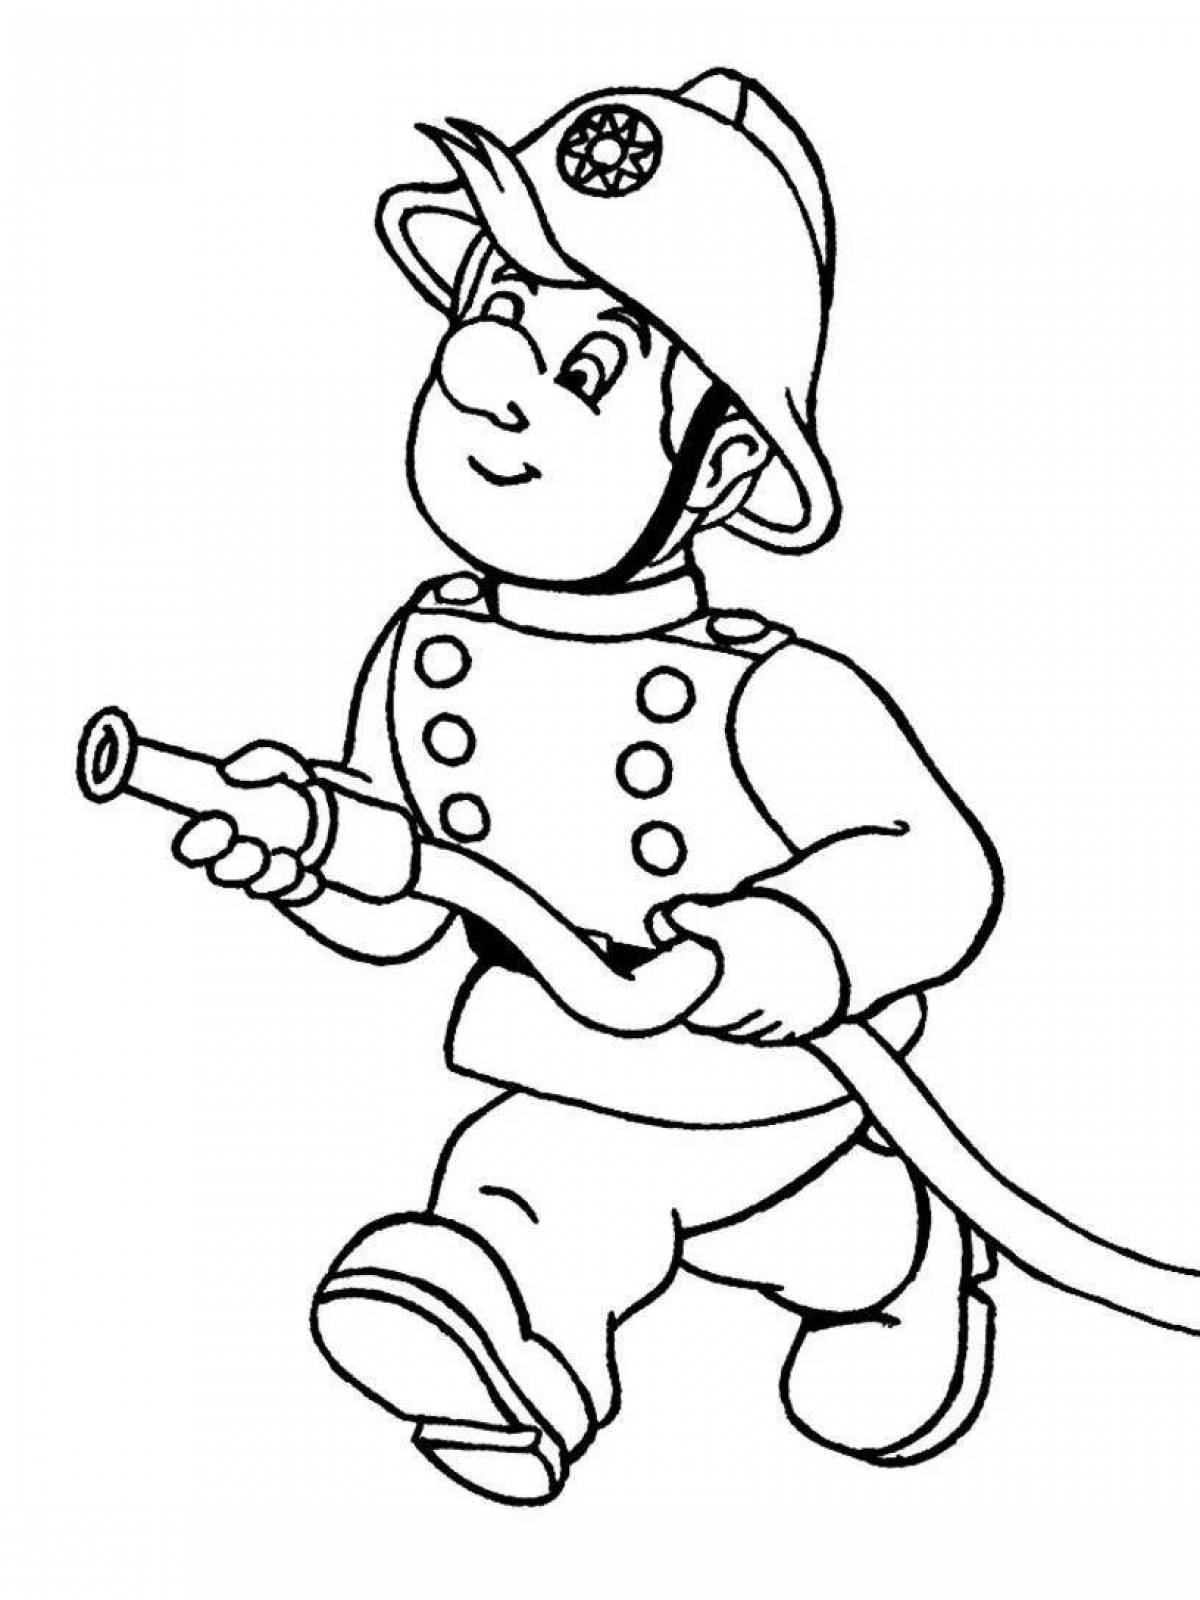 Playful fireman drawing for kids